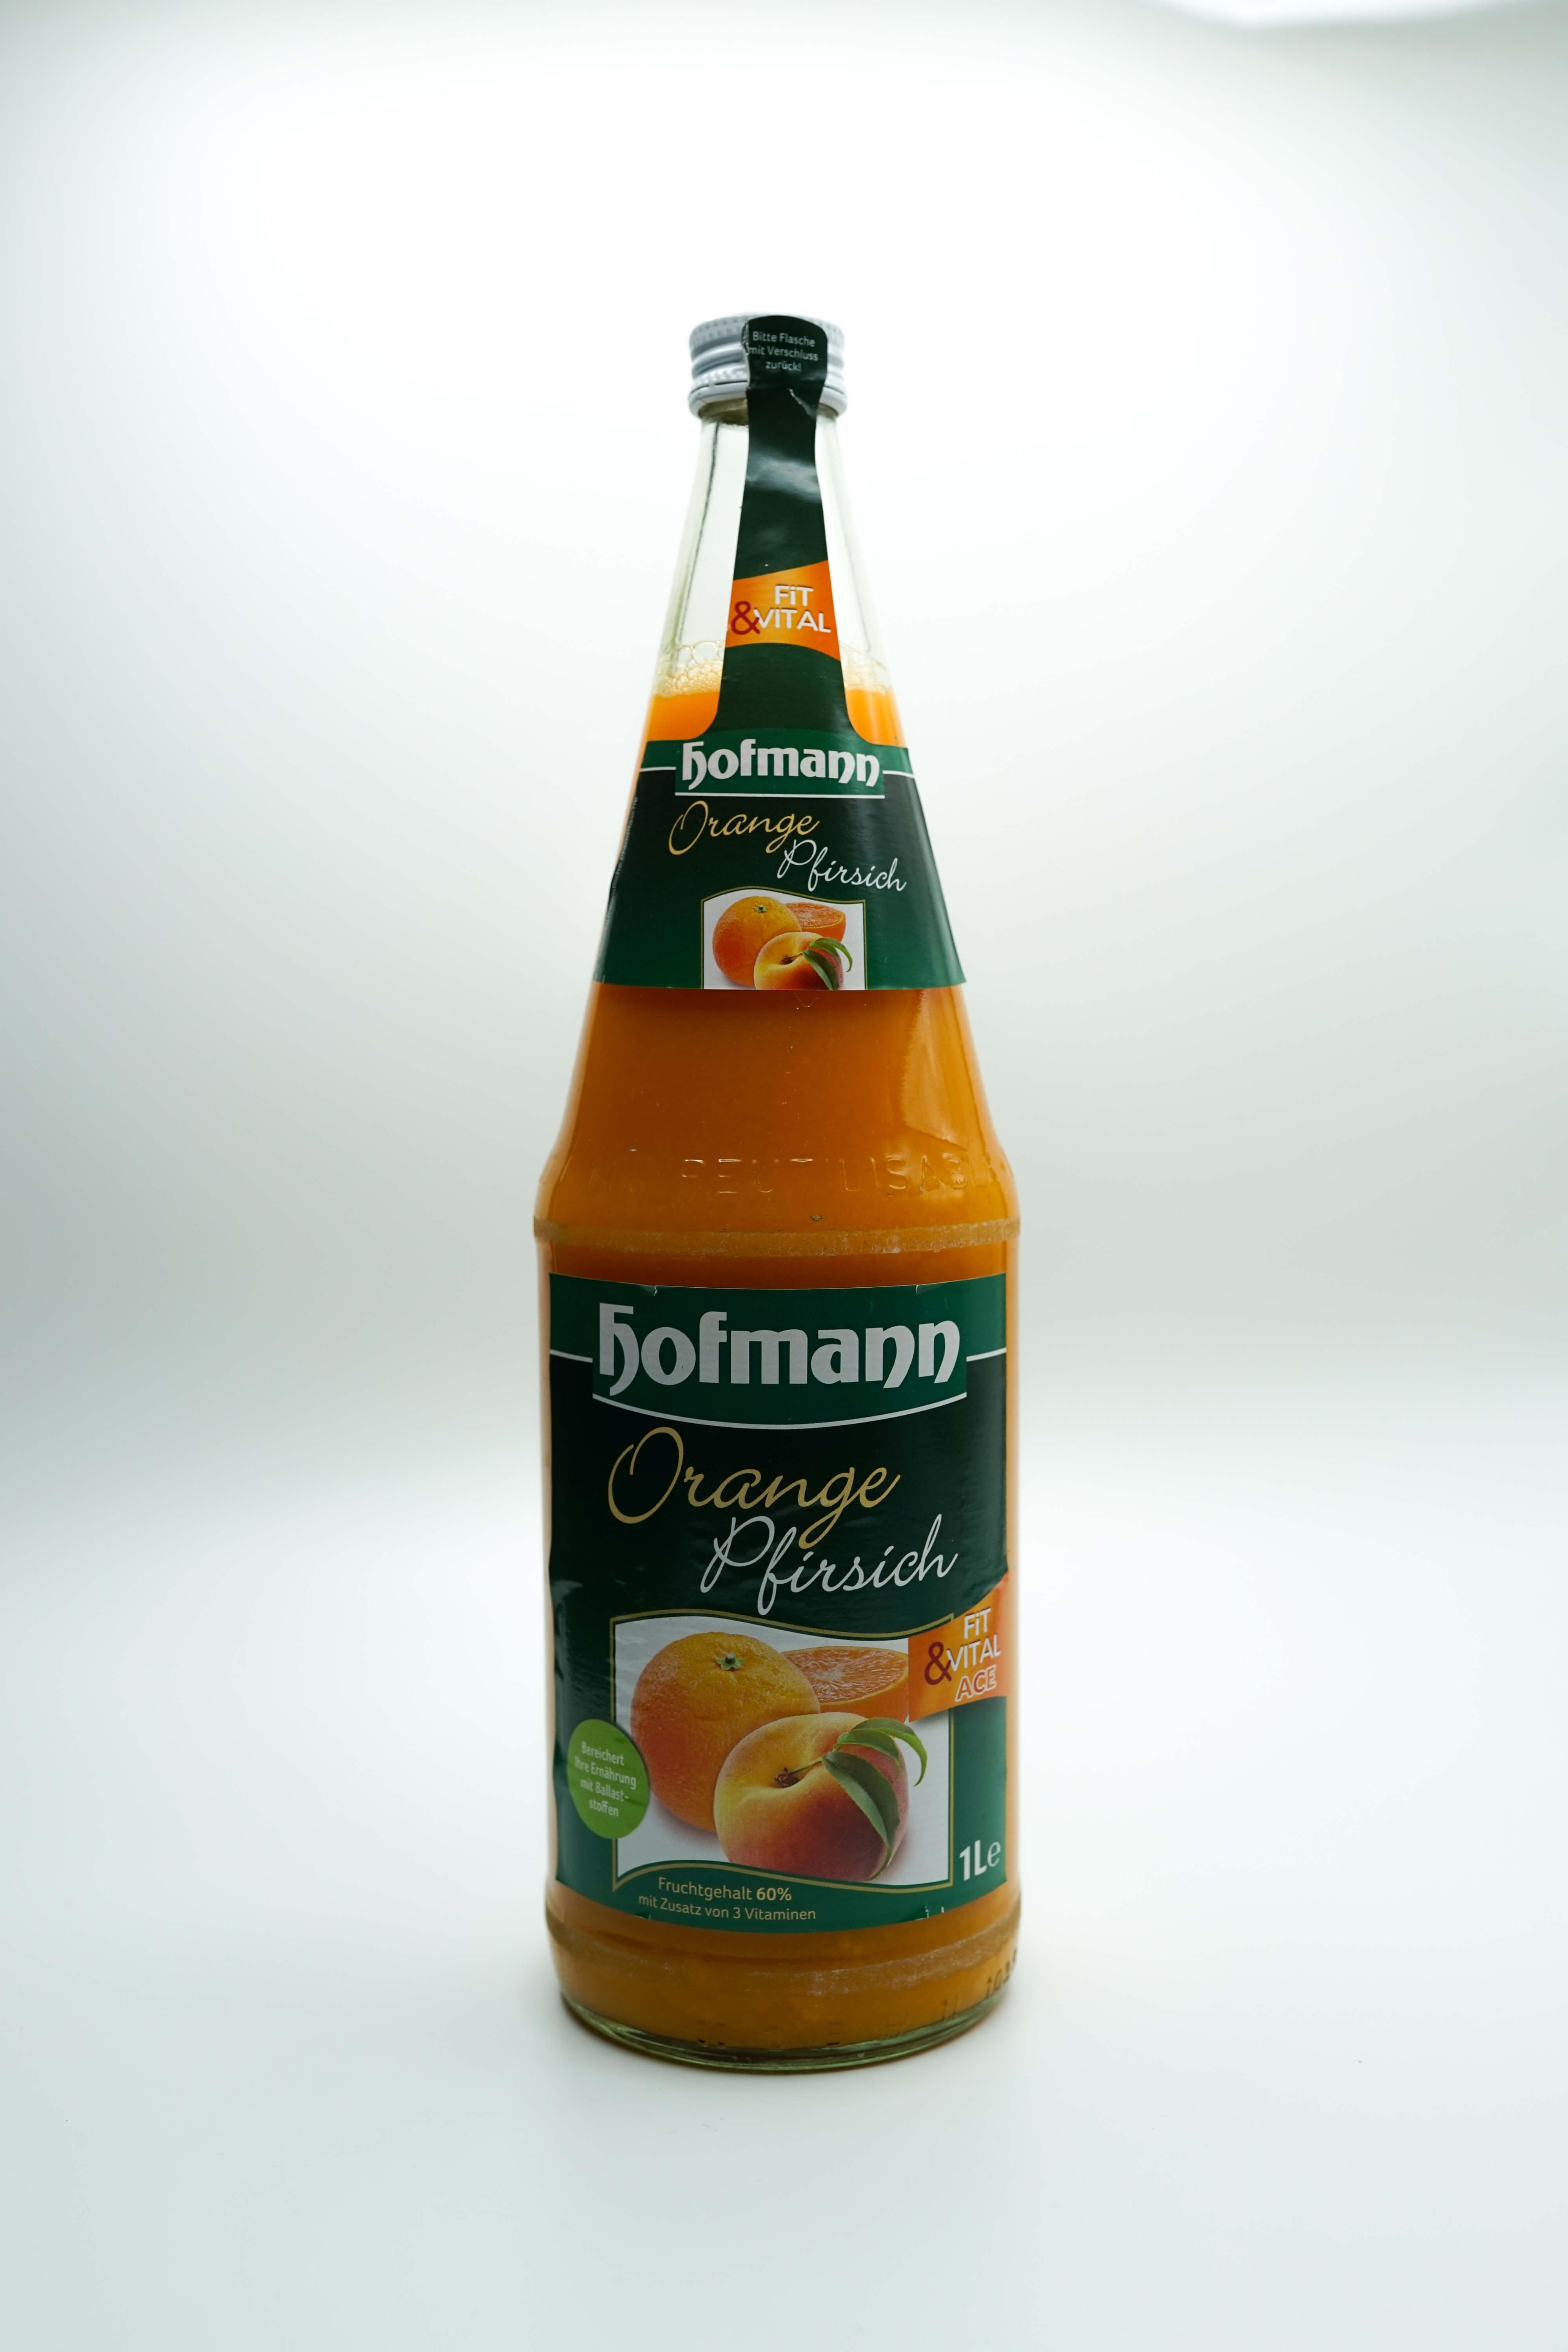 Hofmann Orange-Pfirsich